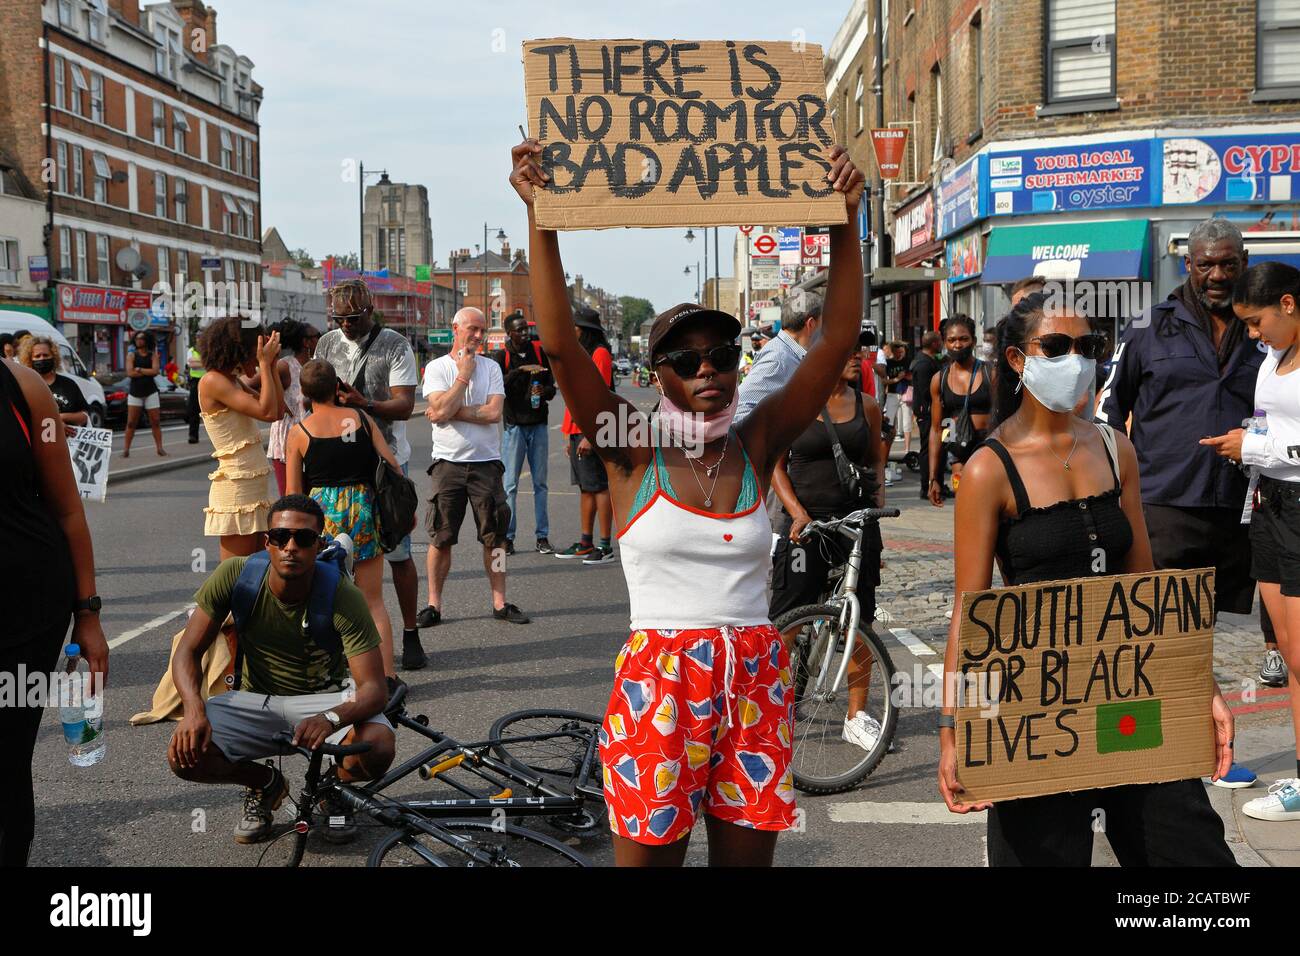 Tottenham - Londres (Royaume-Uni), août 8 2020: Une coalition de groupes activistes rassemblement en dehors du poste de police de Tottenham racisme et violence de la police. Banque D'Images